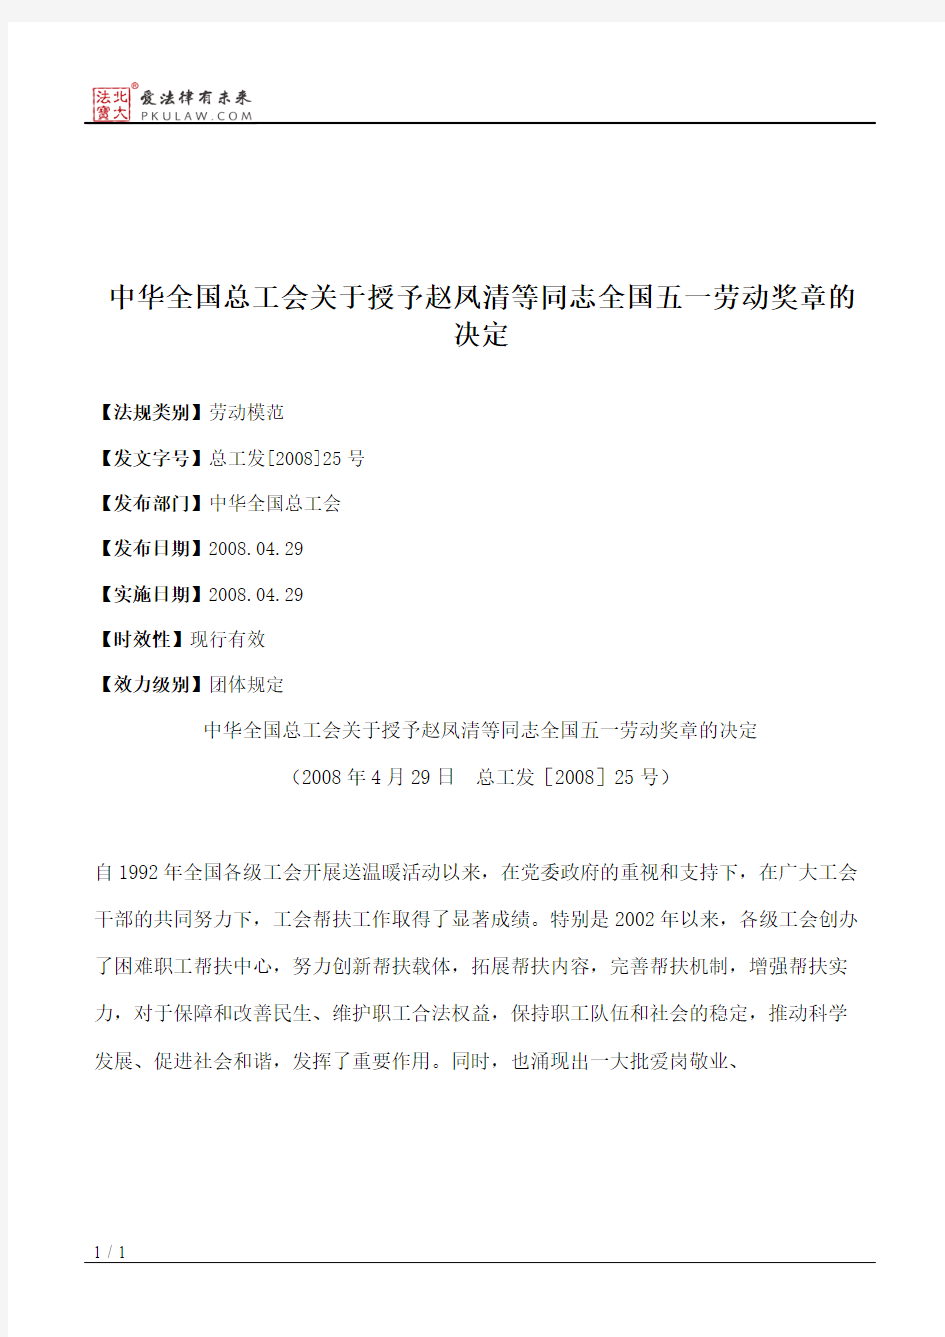 中华全国总工会关于授予赵凤清等同志全国五一劳动奖章的决定